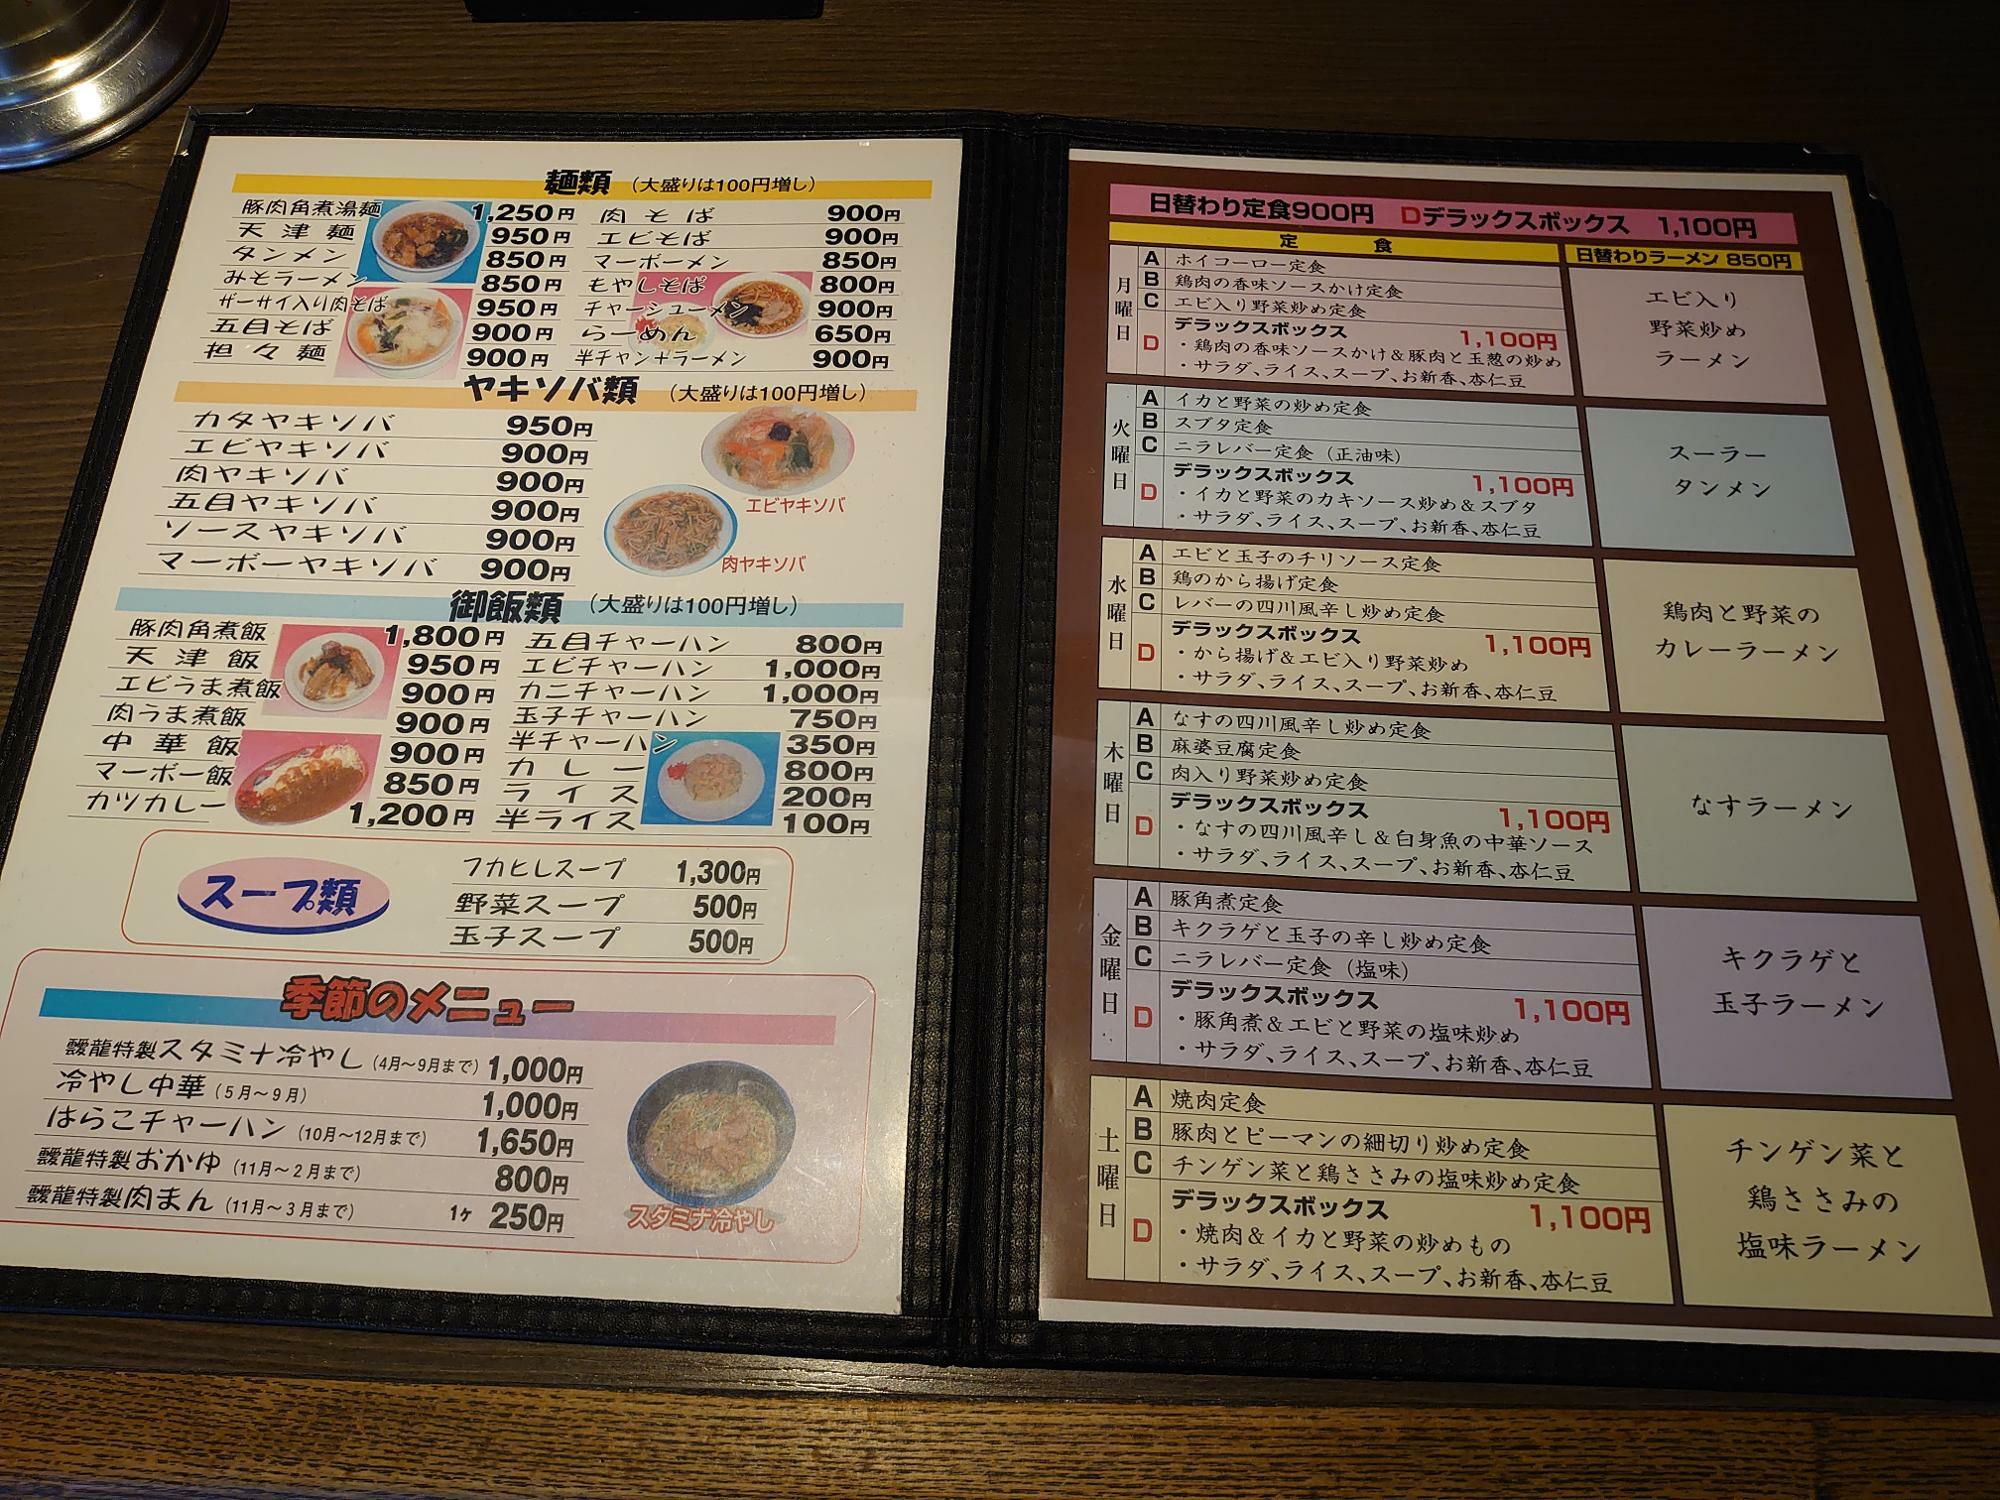 日替わりの隣りのページには、麺類・ヤキソバ類・御飯類・スープ類・季節のメニューも